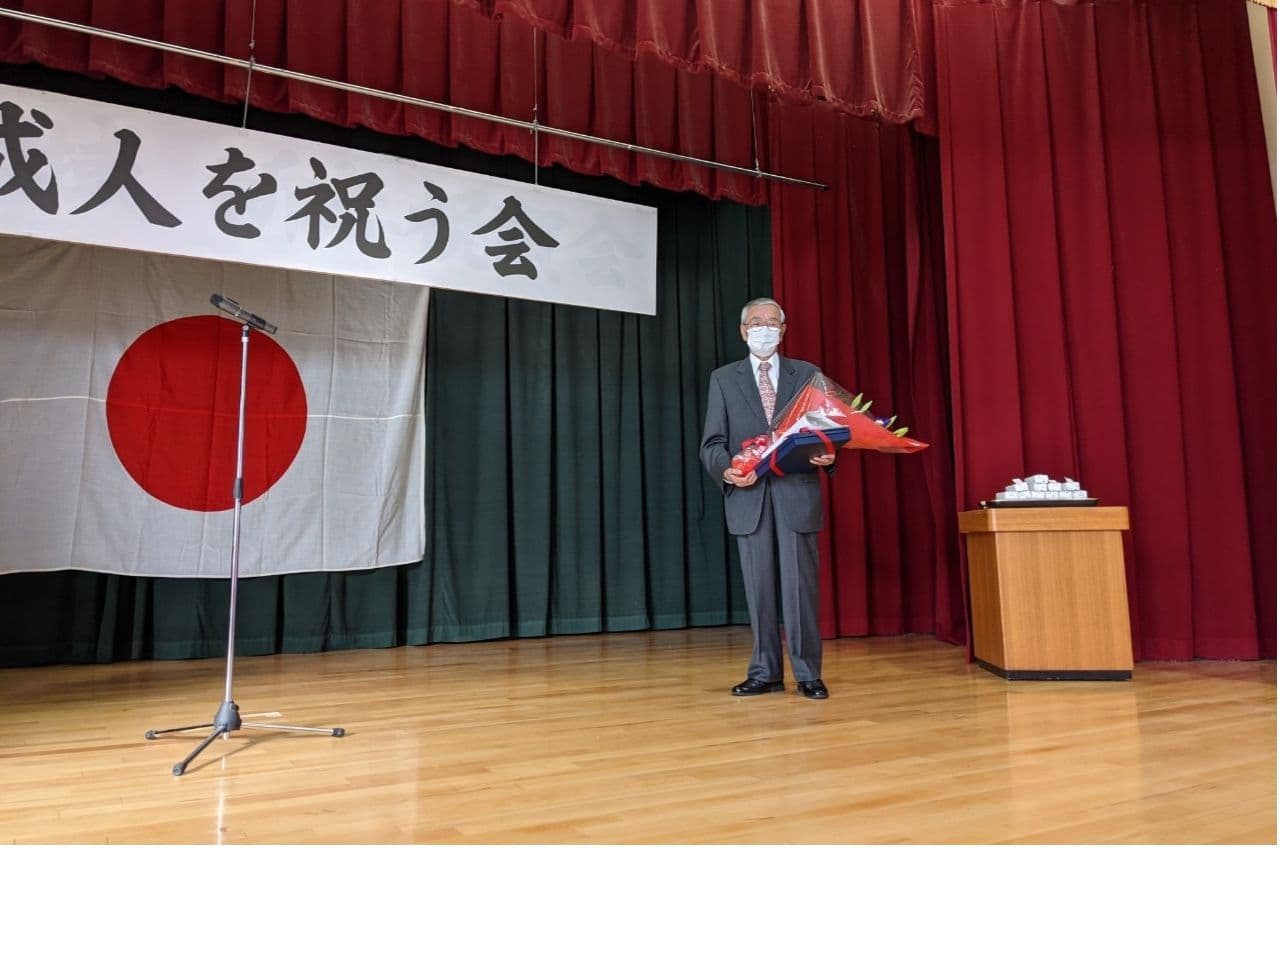 地域に貢献してくださった有木幹郎氏に感謝状と記念品を贈呈。